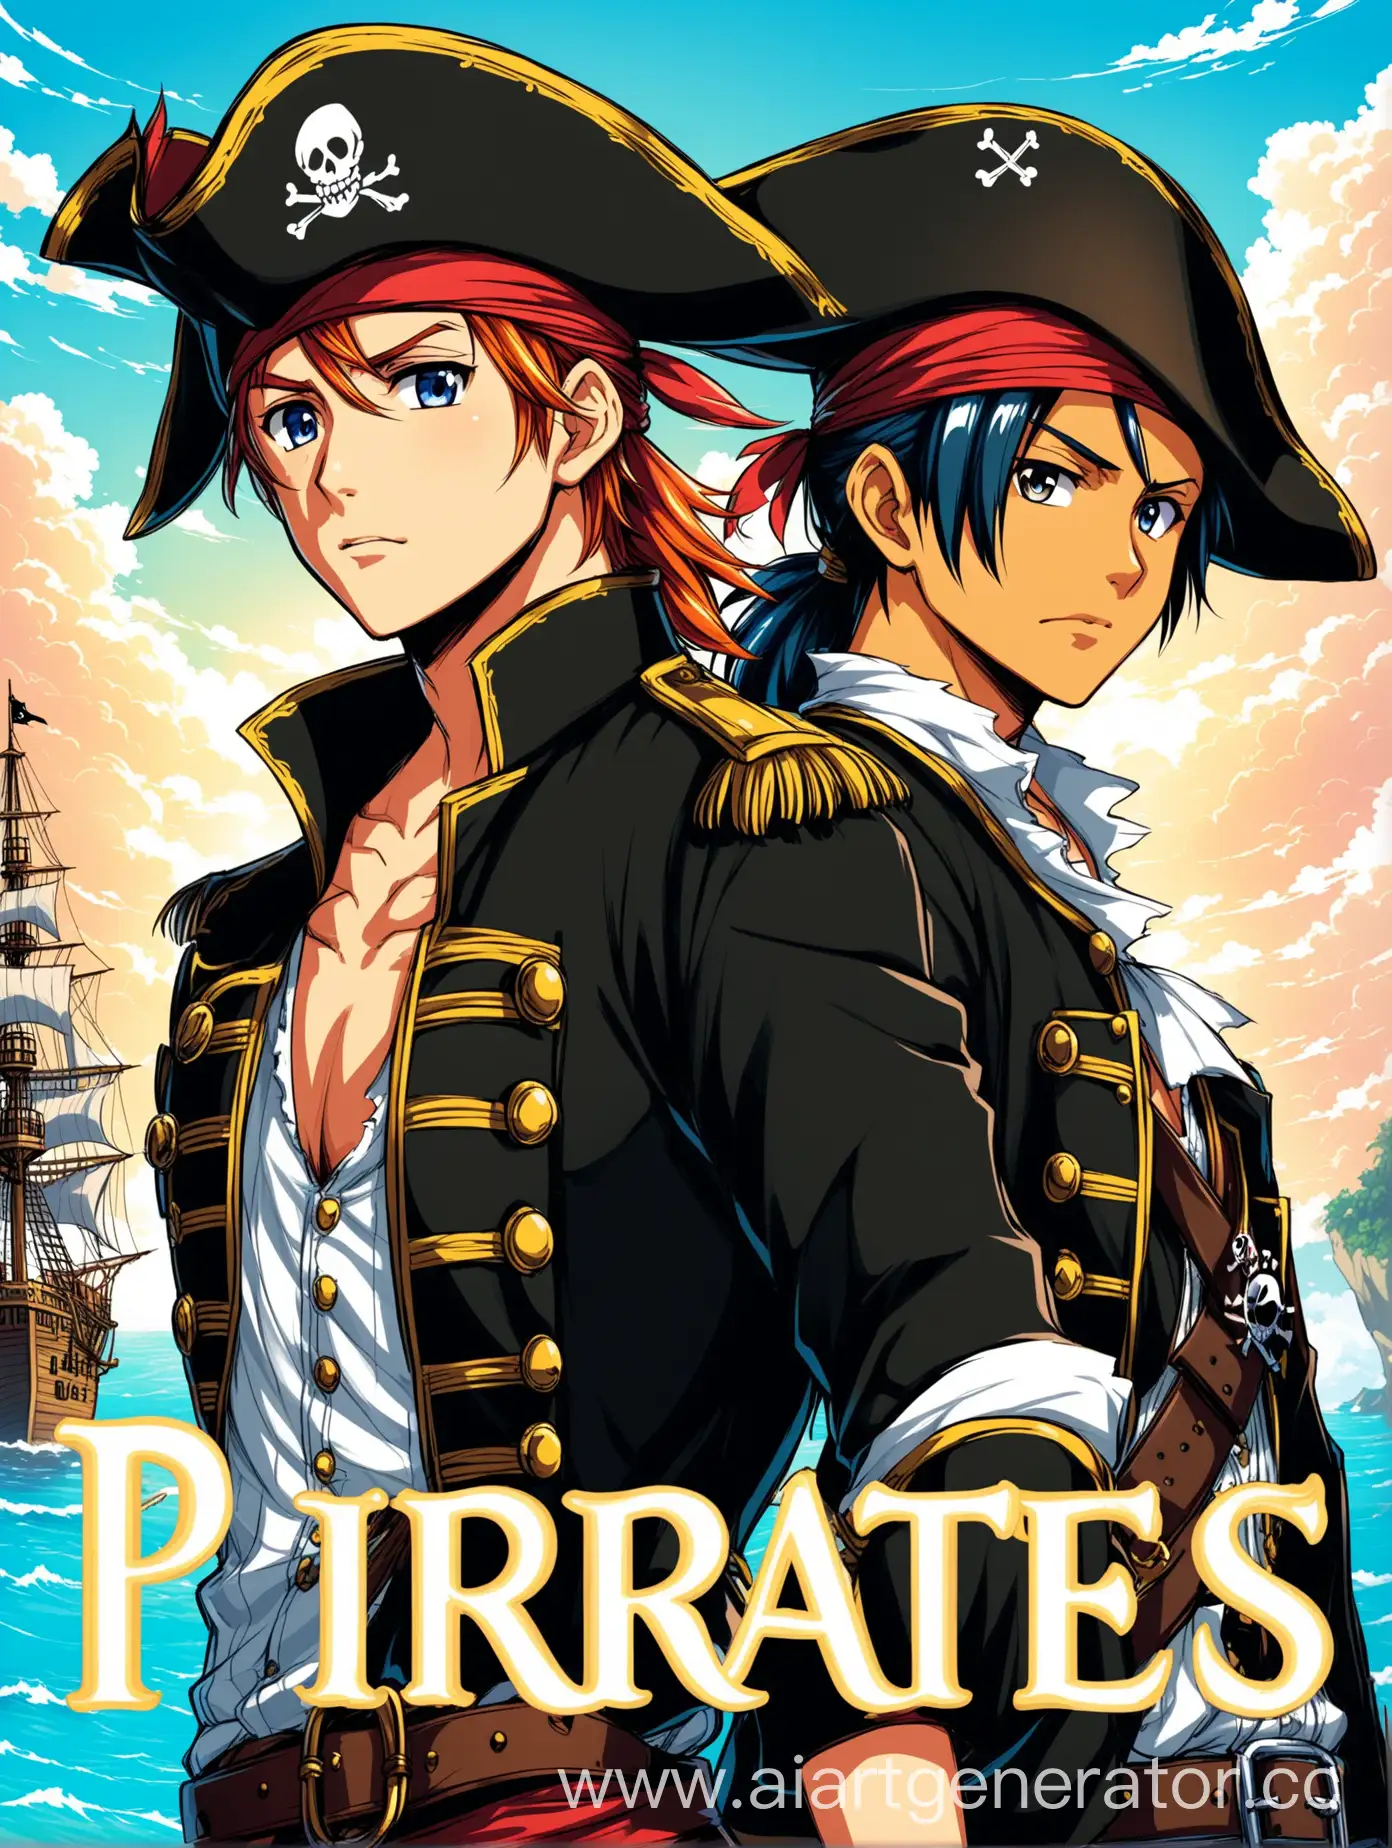 Нарисуй обложку для фанфика про пиратов, в стиле аниме. Должно быть два главных героя оба парня. Никаких девушек.